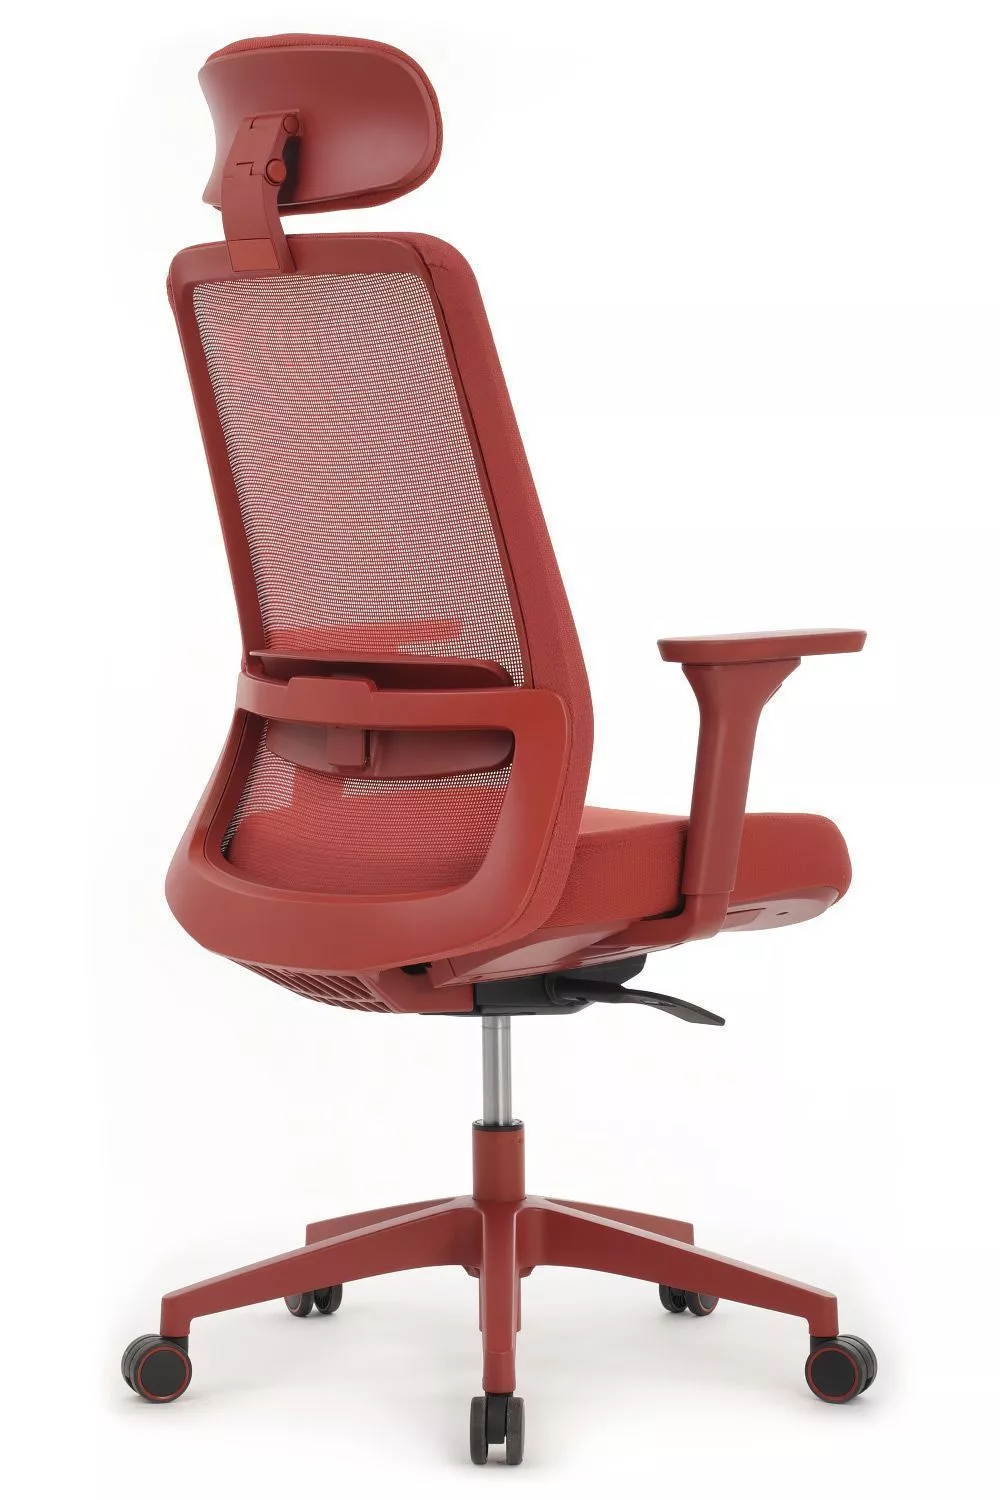 Кресло RIVA DESIGN WORK W-218C красный